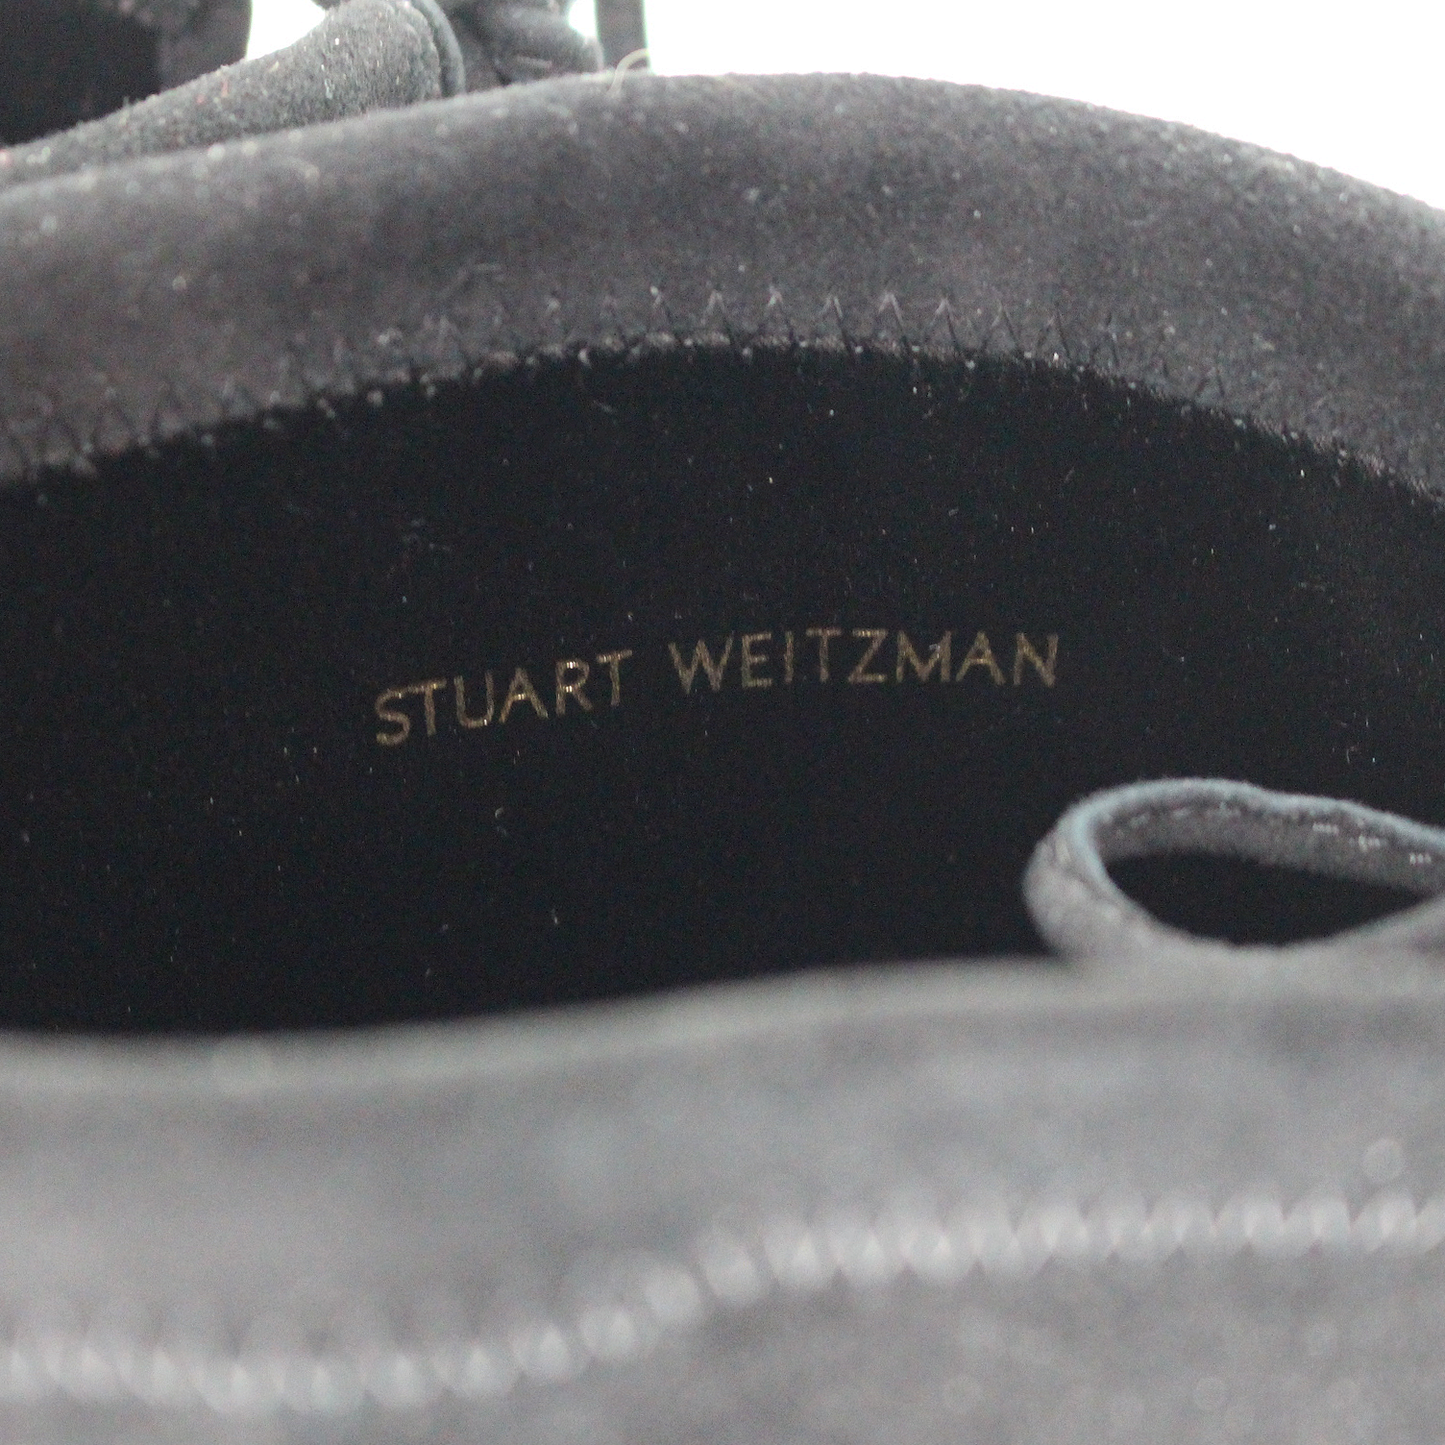 Stuart Weitzman Genna 25 Boots